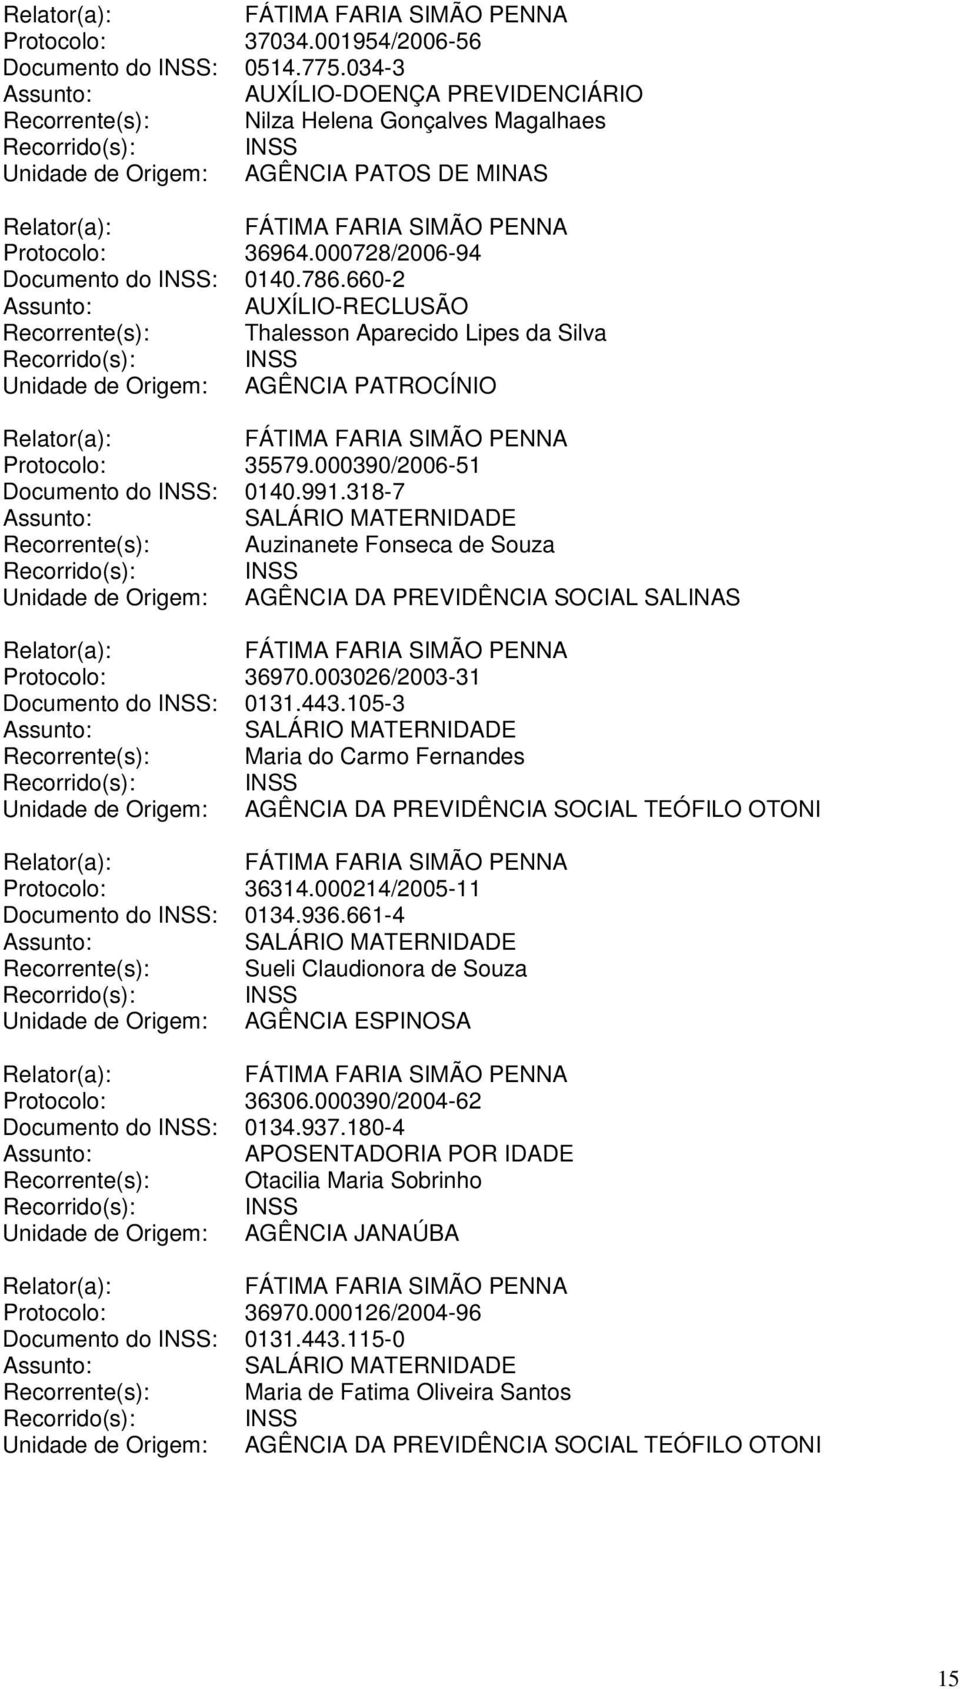 000390/2006-51 Documento do INSS: 0140.991.318-7 Recorrente(s): Auzinanete Fonseca de Souza Unidade de Origem: AGÊNCIA DA PREVIDÊNCIA SOCIAL SALINAS Protocolo: 36970.